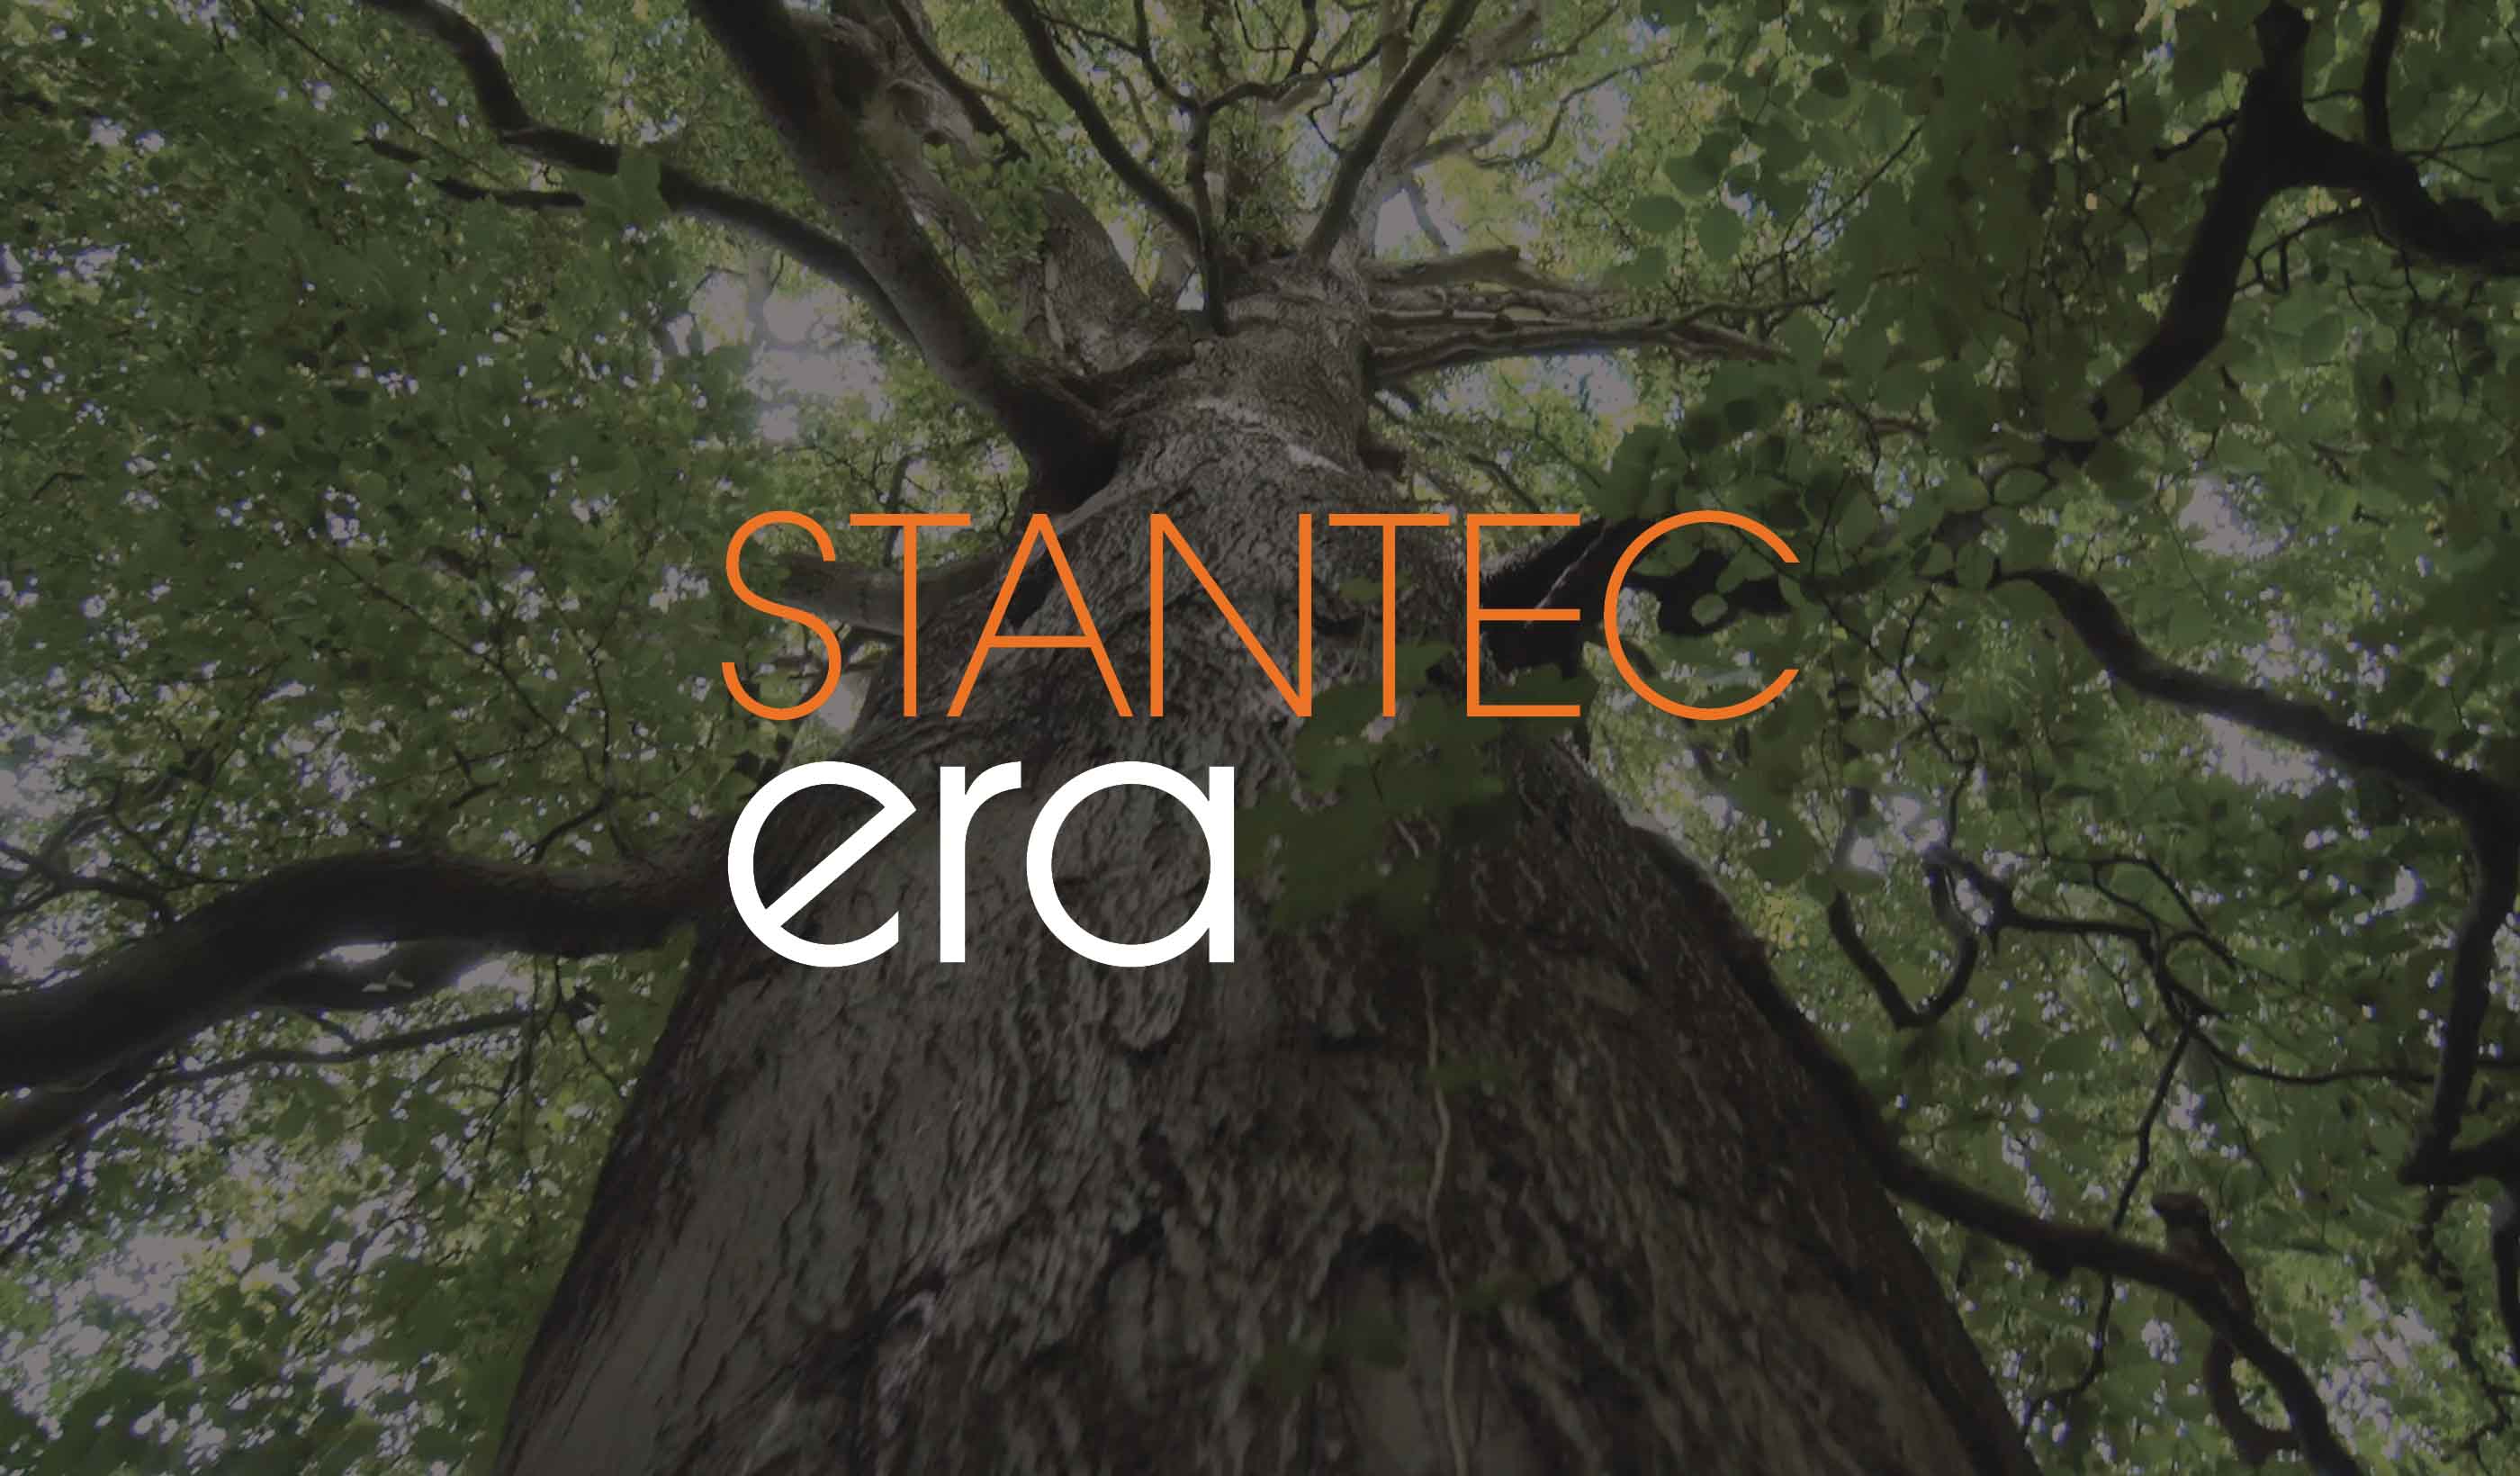 Stantec ERA Issue 7 | The Big Ideas Issue